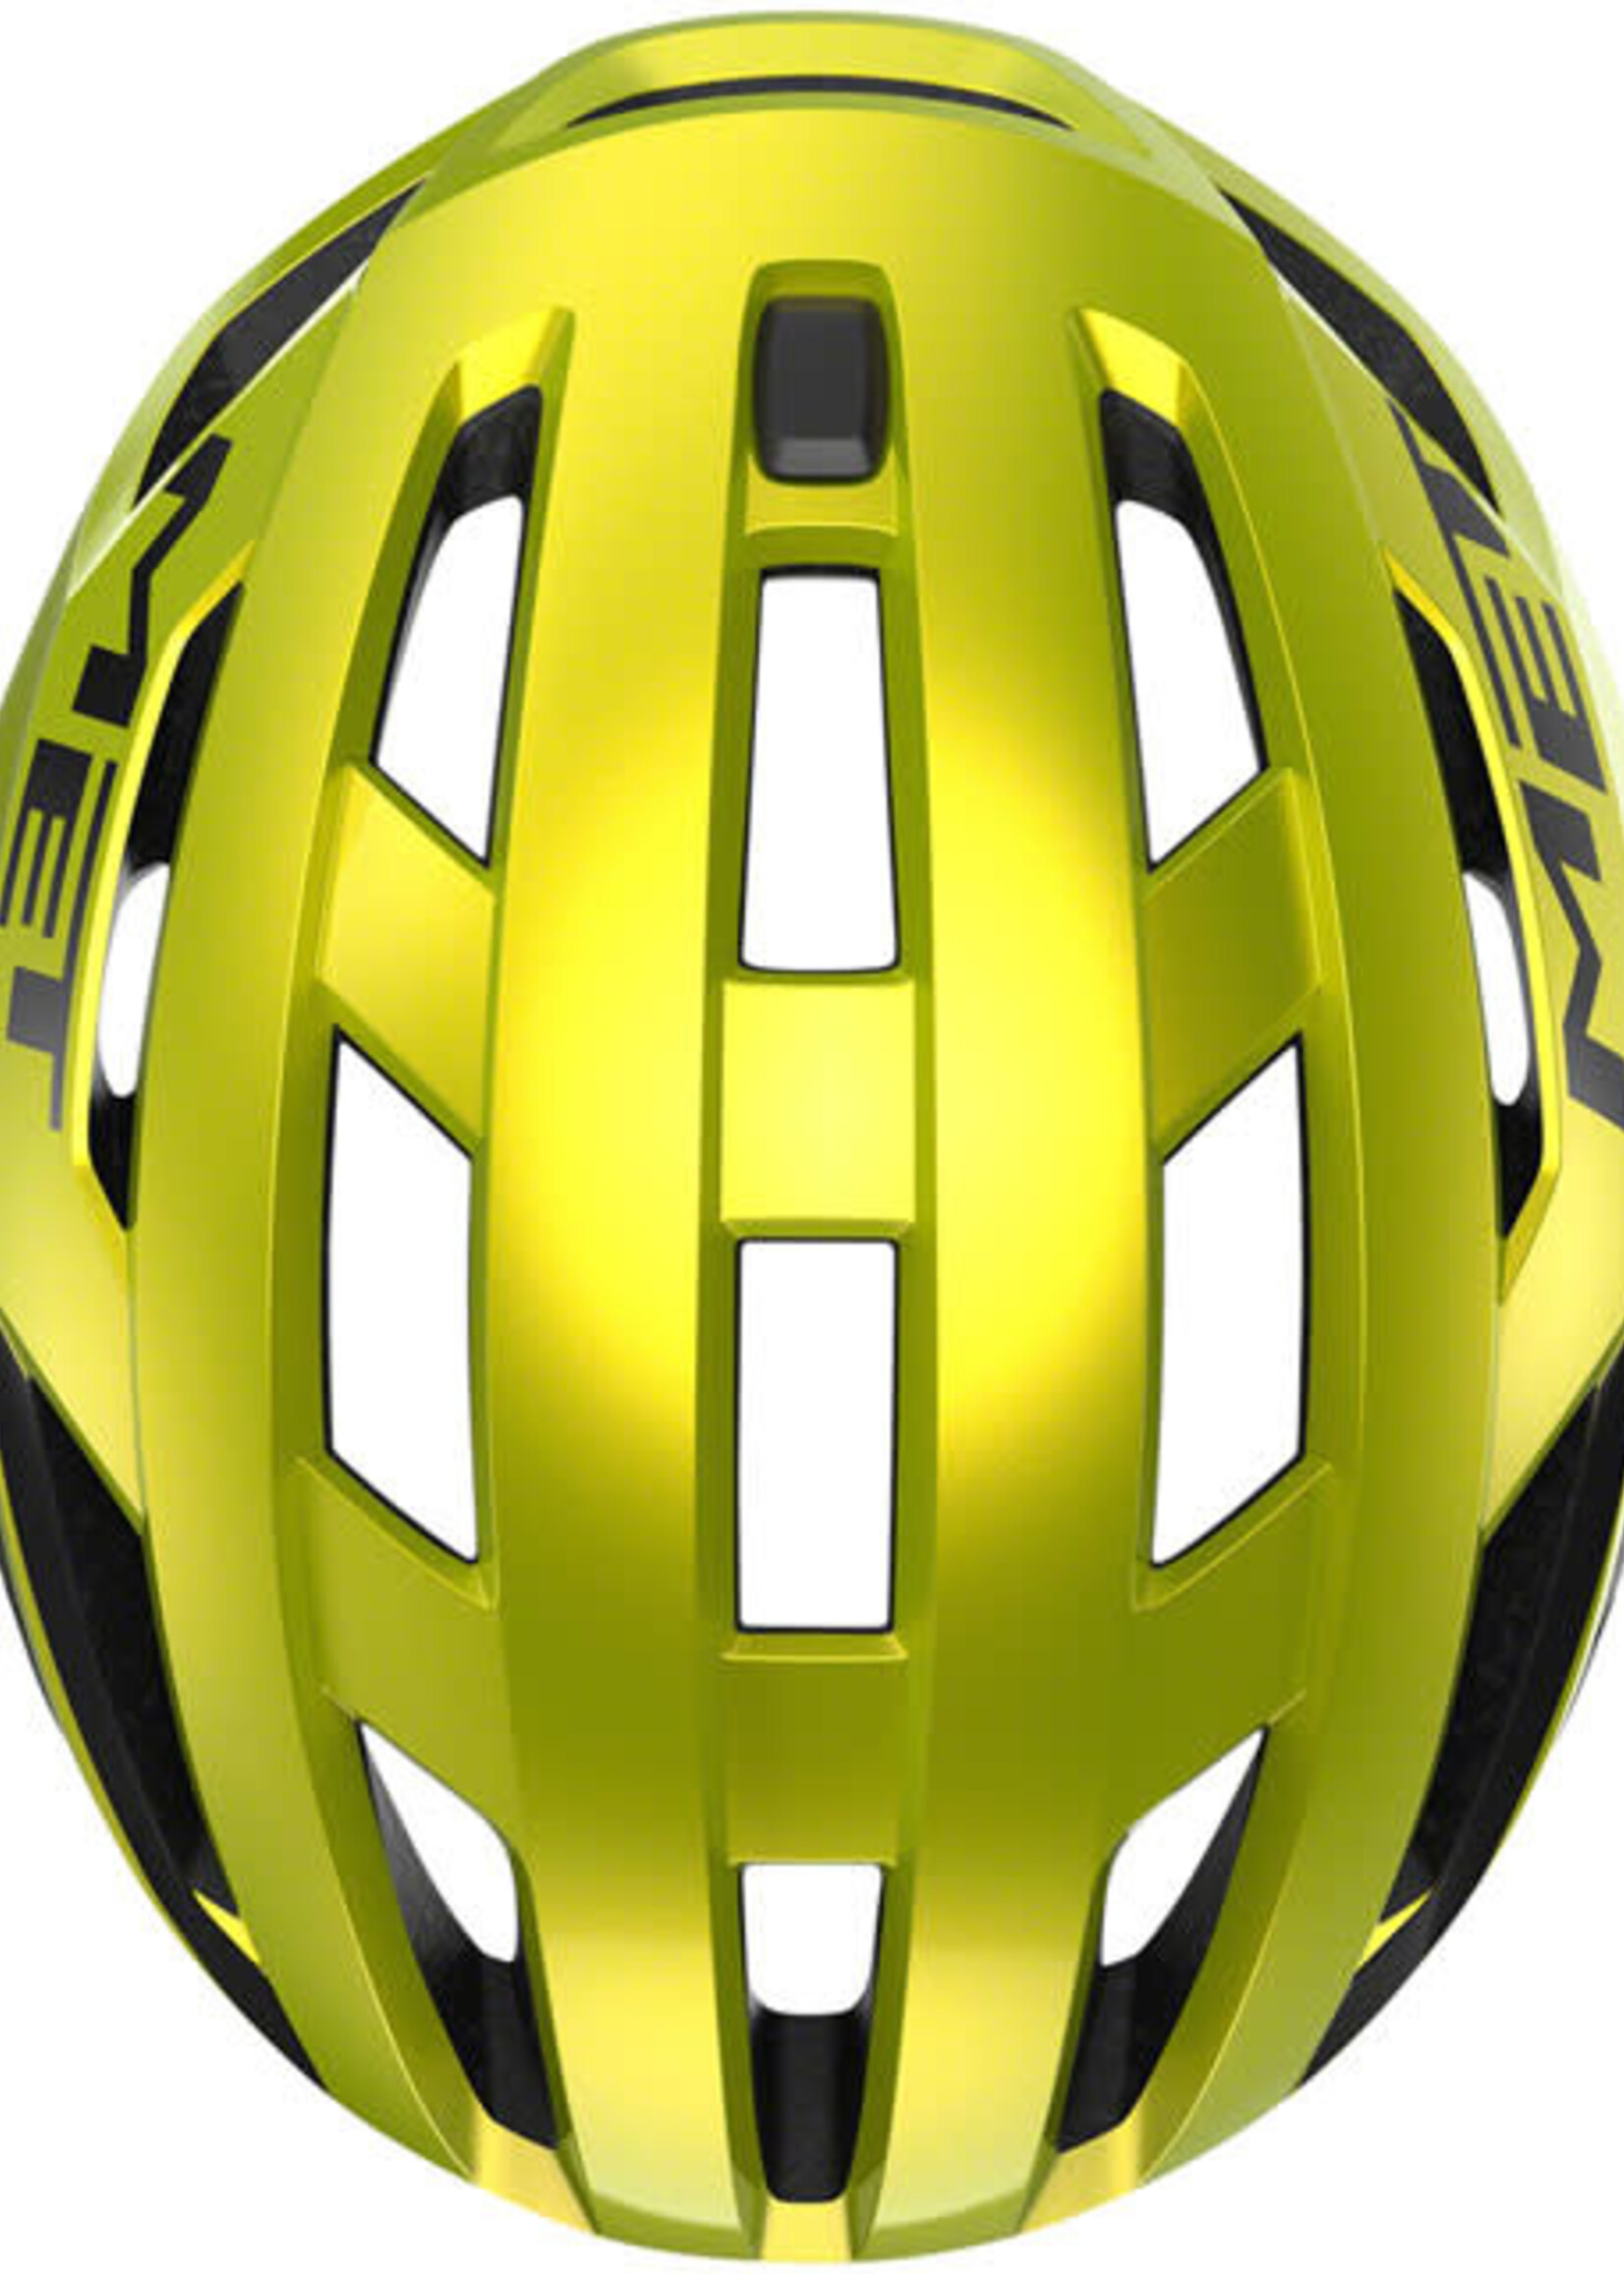 MET Helmets MET Vinci MIPS Helmet - Lime Yellow Metallic Glossy Large